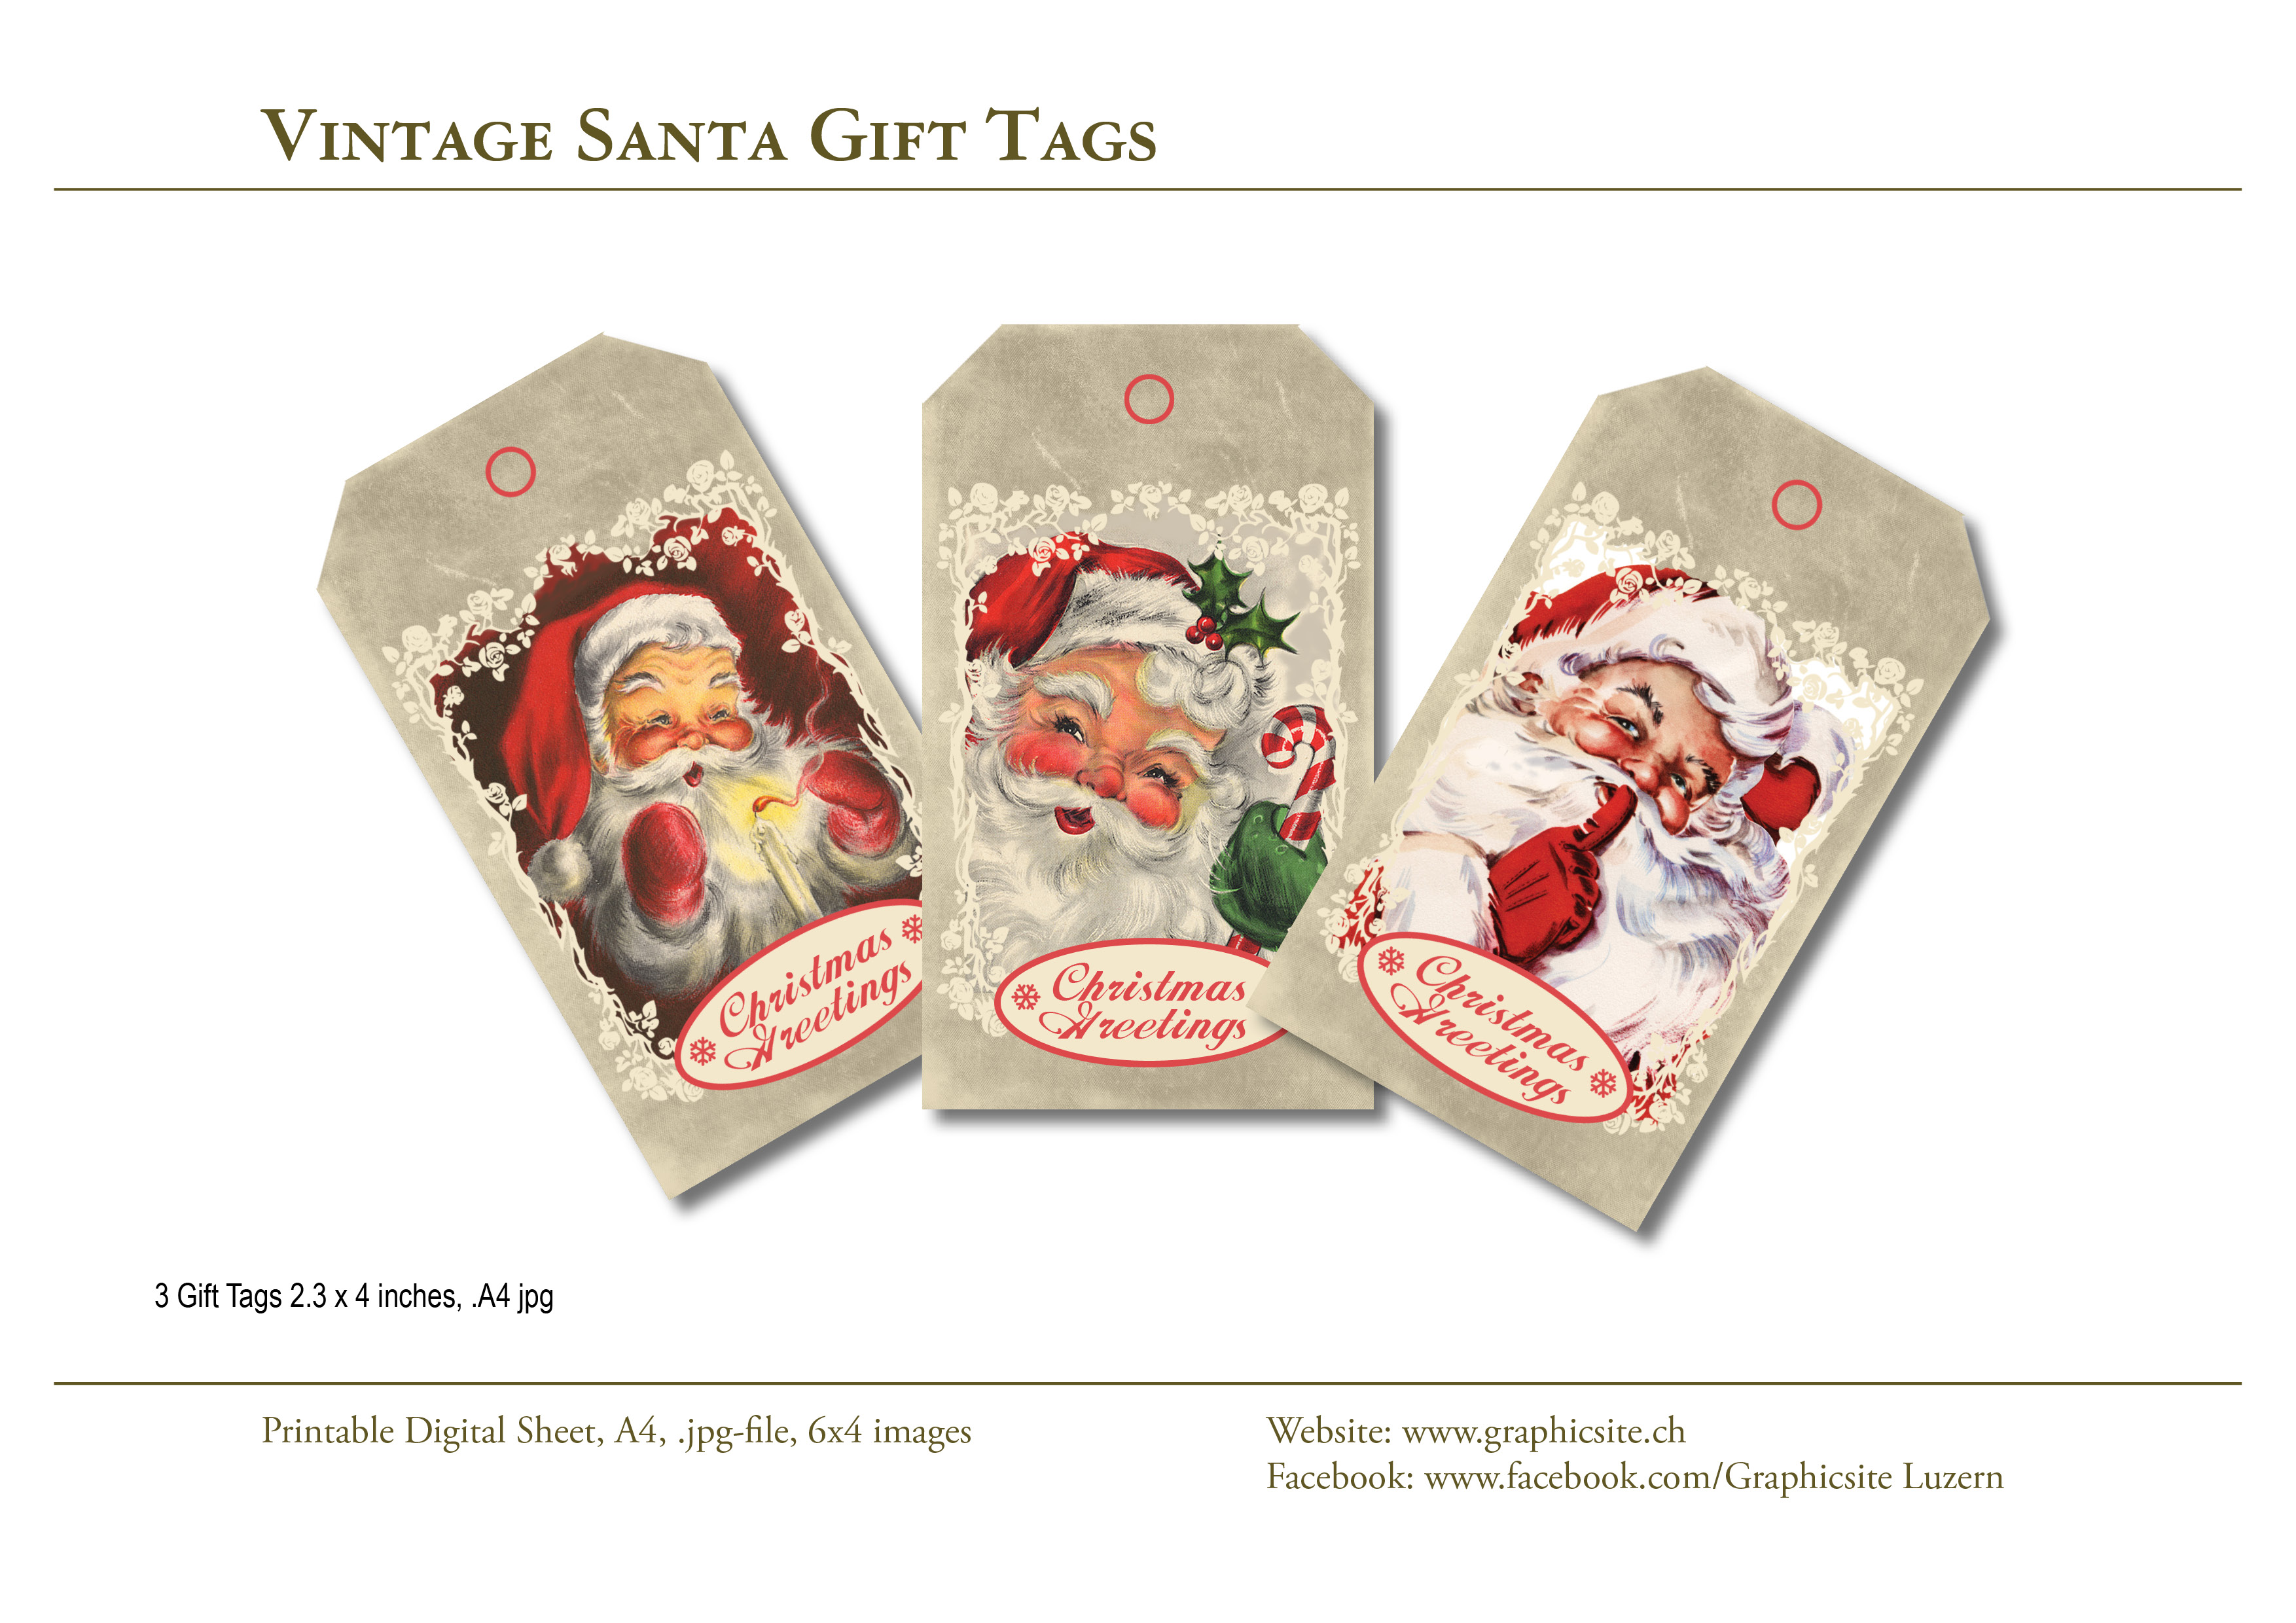 Karten selber drucken - Weihnachtskarten, Grusskarten, Vintage Vintage Santa Gift Tags - #weihnachtskarten, #karten, #selber, #drucken, #gestalten, #etiketten, #basteln, #luzern, #schweiz